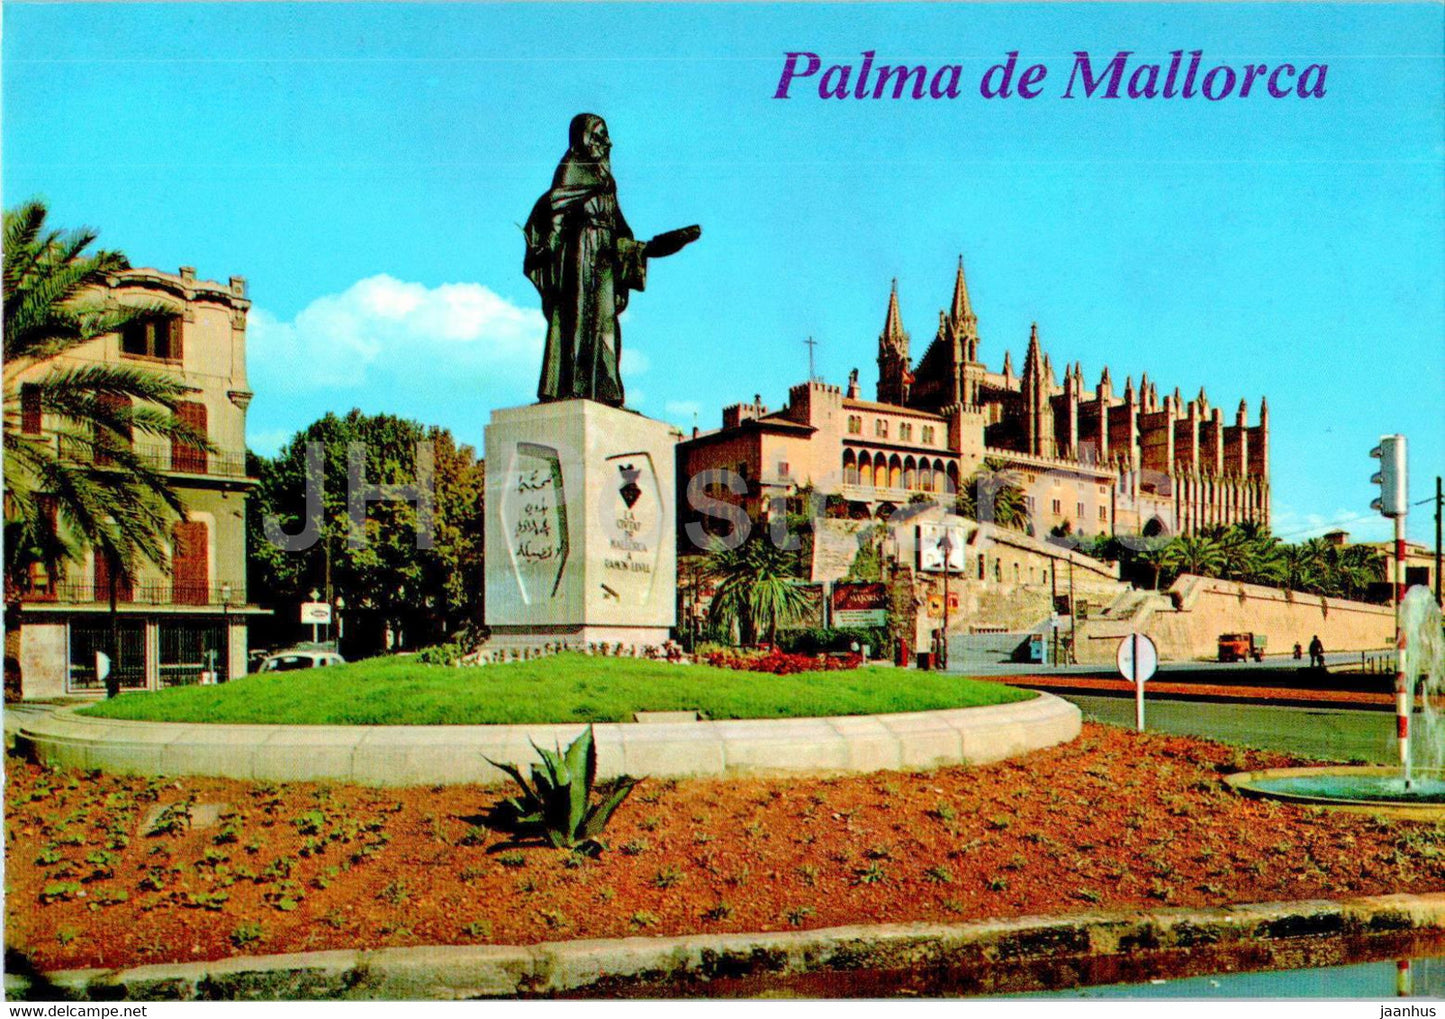 Palma de Mallorca - Monumento a Ramon Llull - Al fondo - la Catedral - monument - 1039 - Spain - unused - JH Postcards